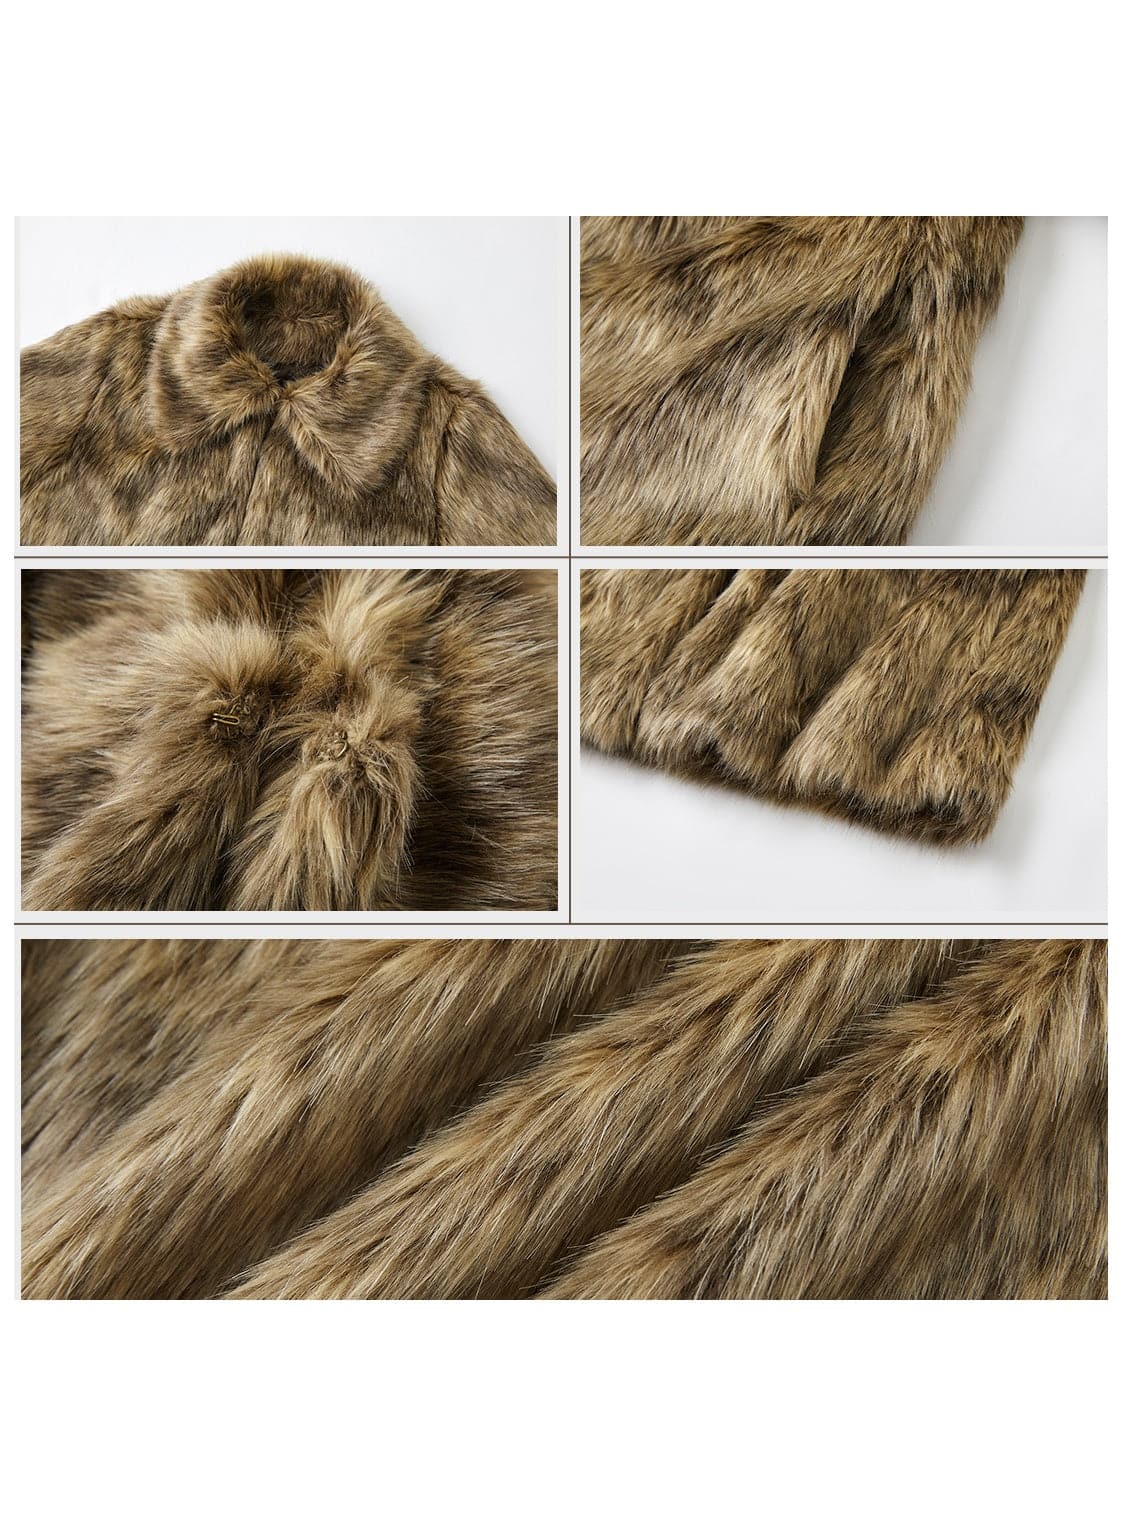 Eco-Chic Fur Short Coat - chiclara